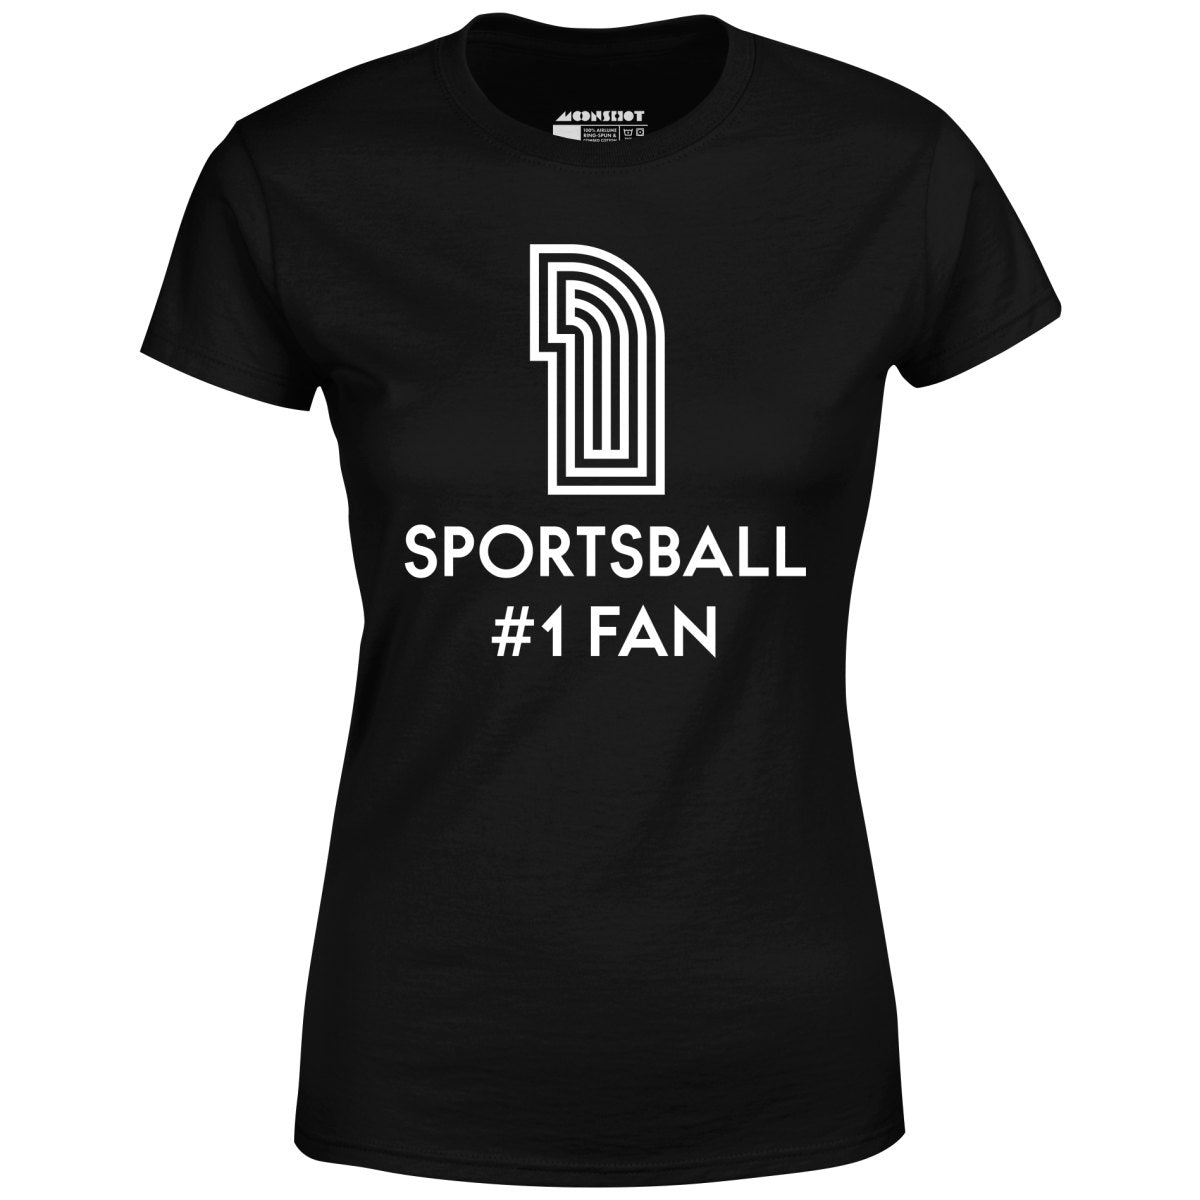 Sportsball #1 Fan - Women's T-Shirt